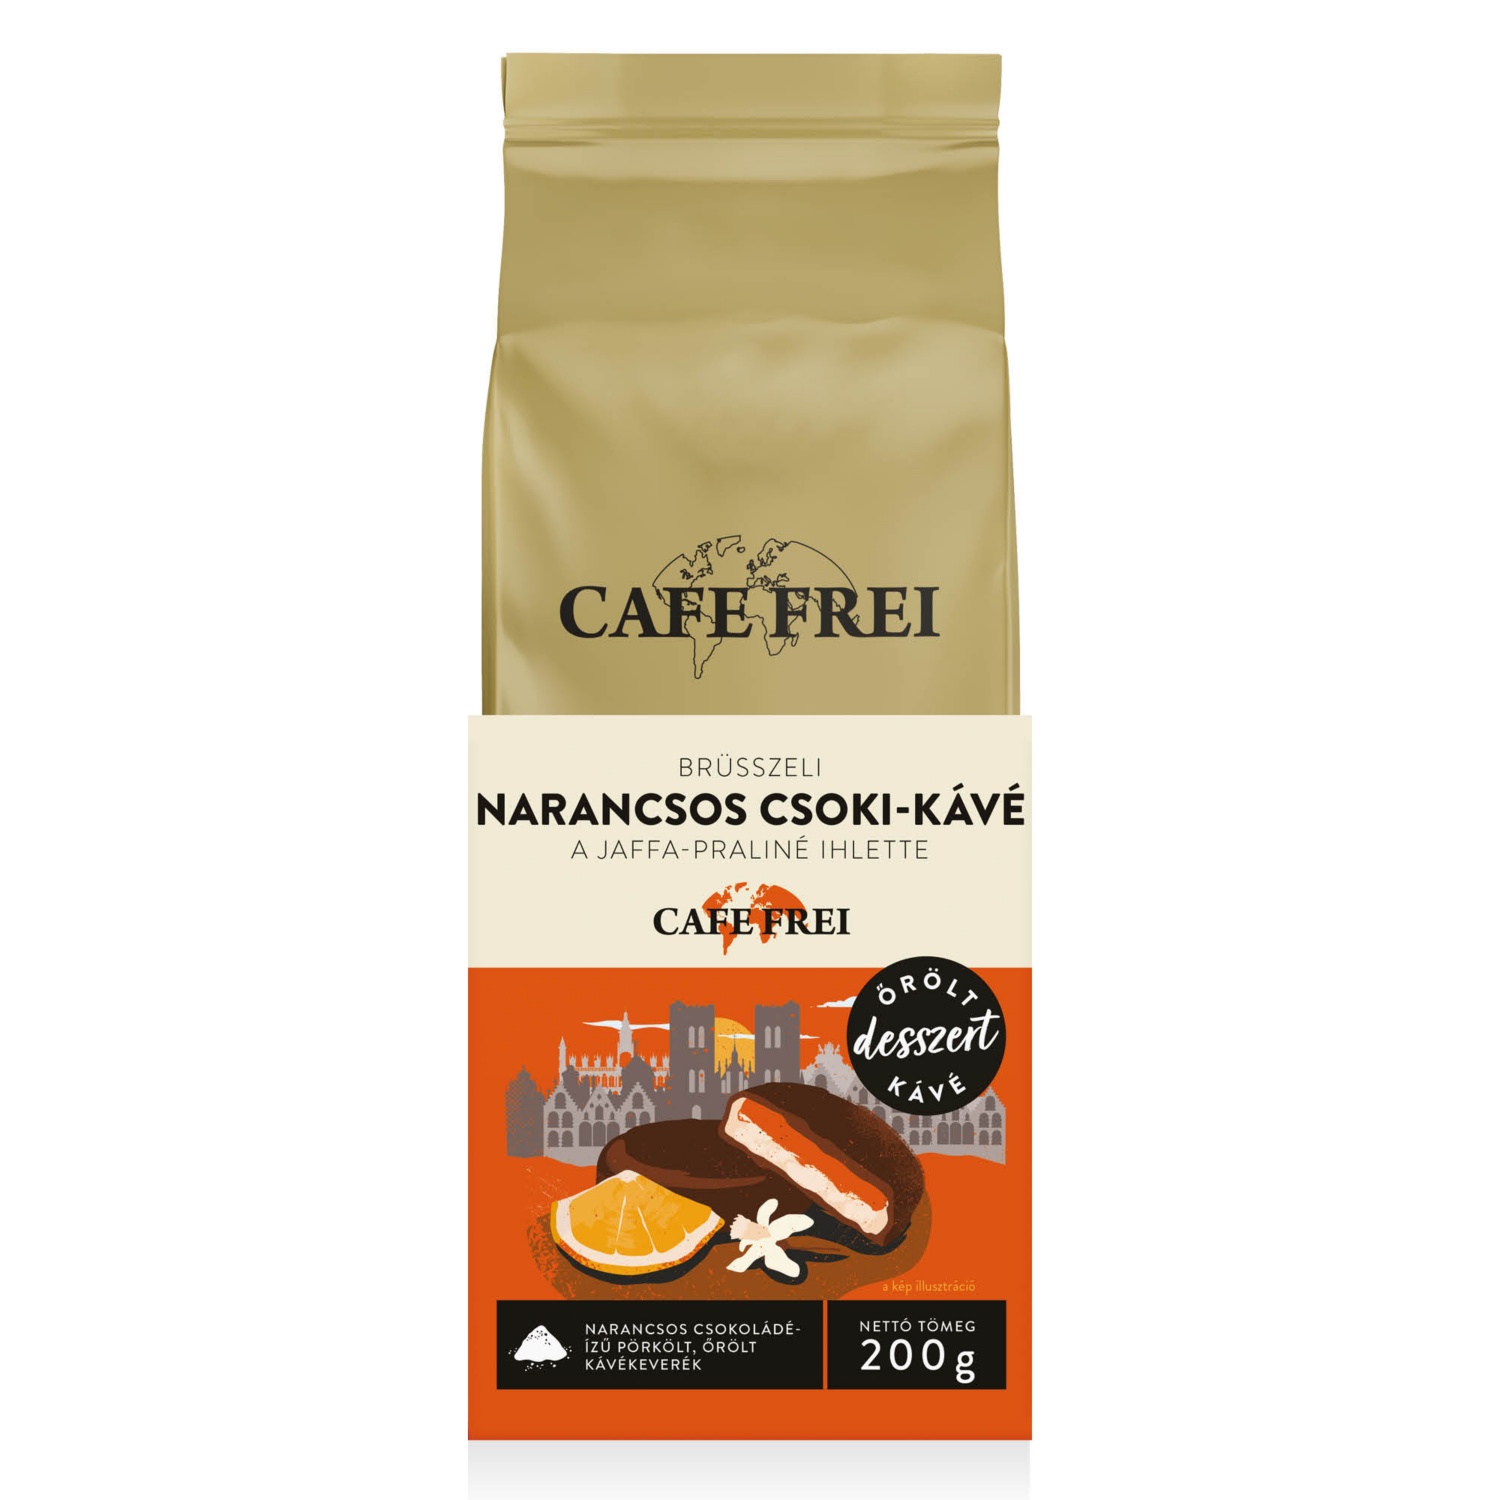 CAFE FREI Őrölt kávékeverék, 200 g, brüsszeli narancsos csoki-kávé